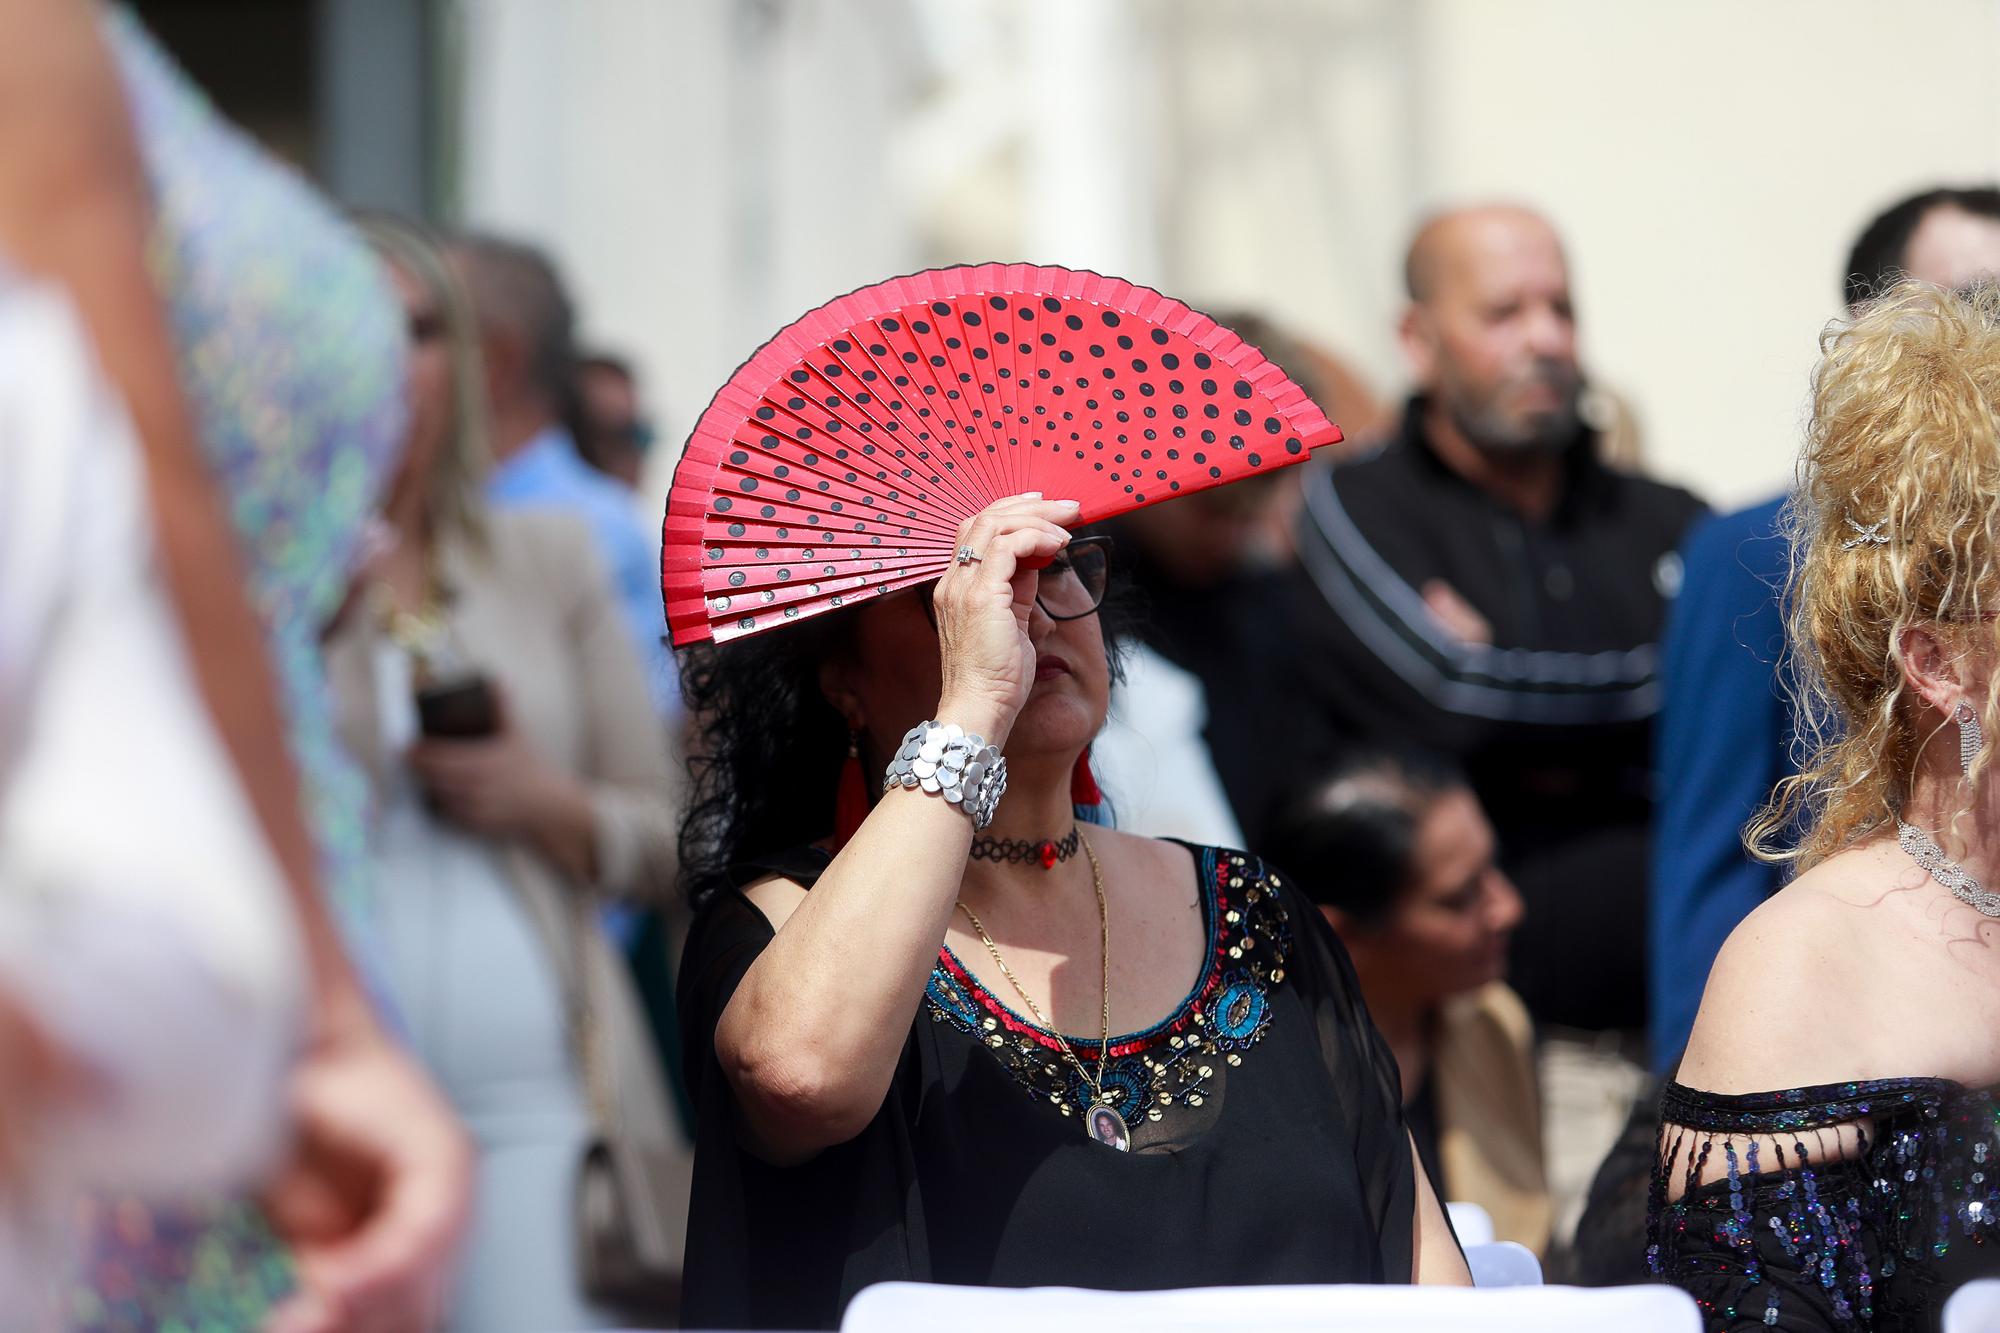 FOTOS | Las imágenes de la gran boda gitana de Lucía y Daniel en Ibiza